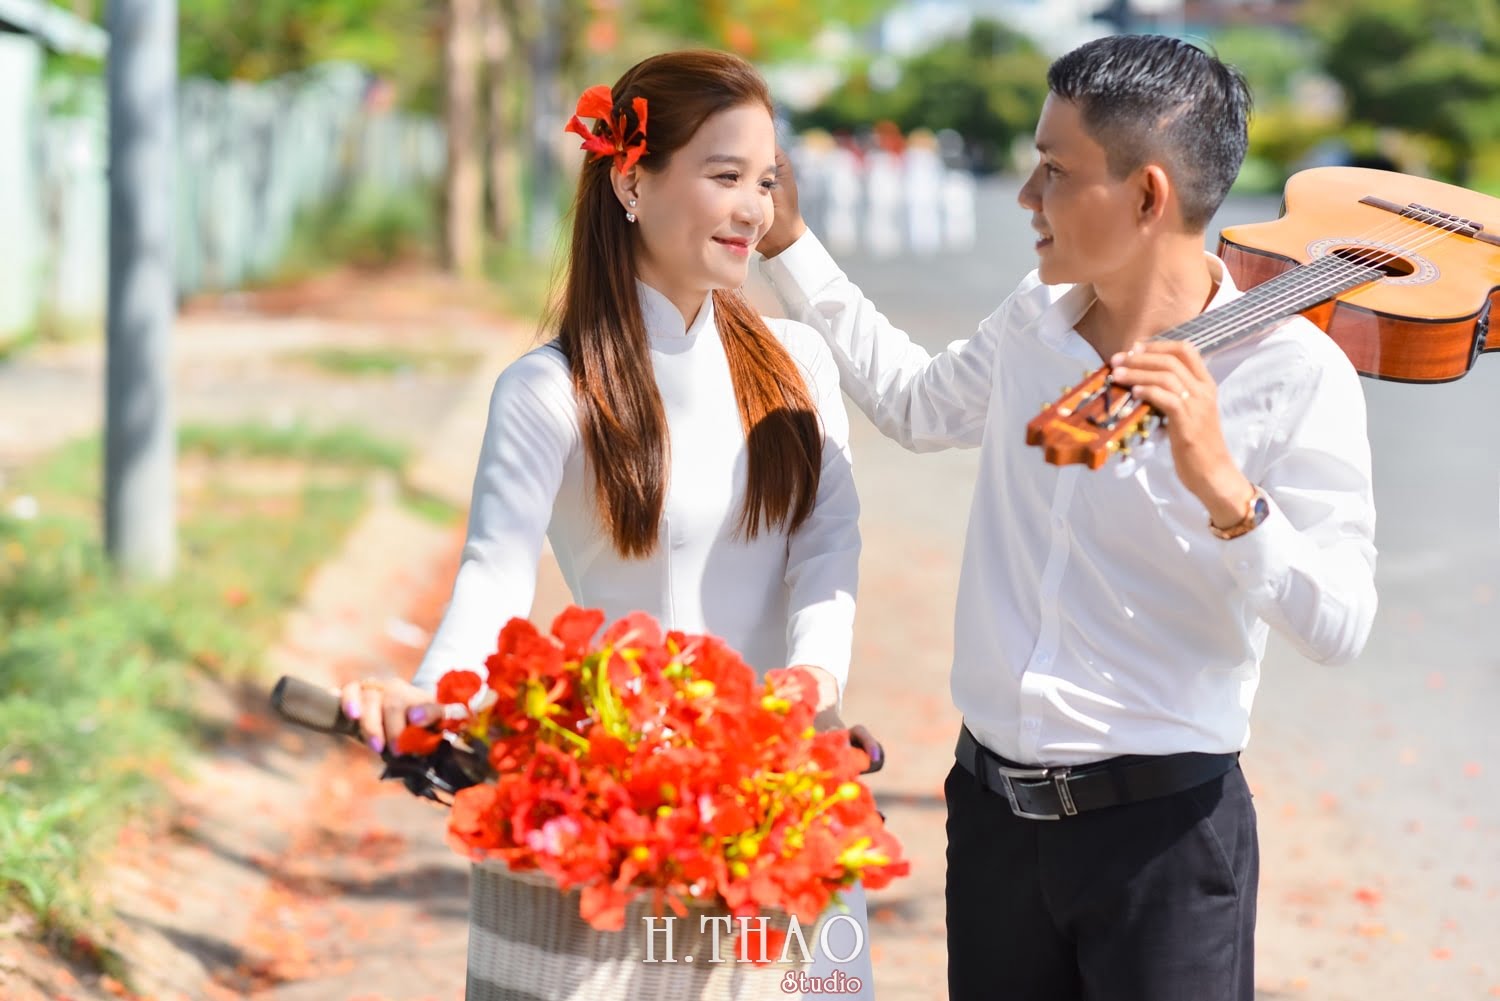 Anh hoa phuong 6 min - Bộ ảnh couple chụp với hoa phượng tuyệt đẹp - HThao Studio